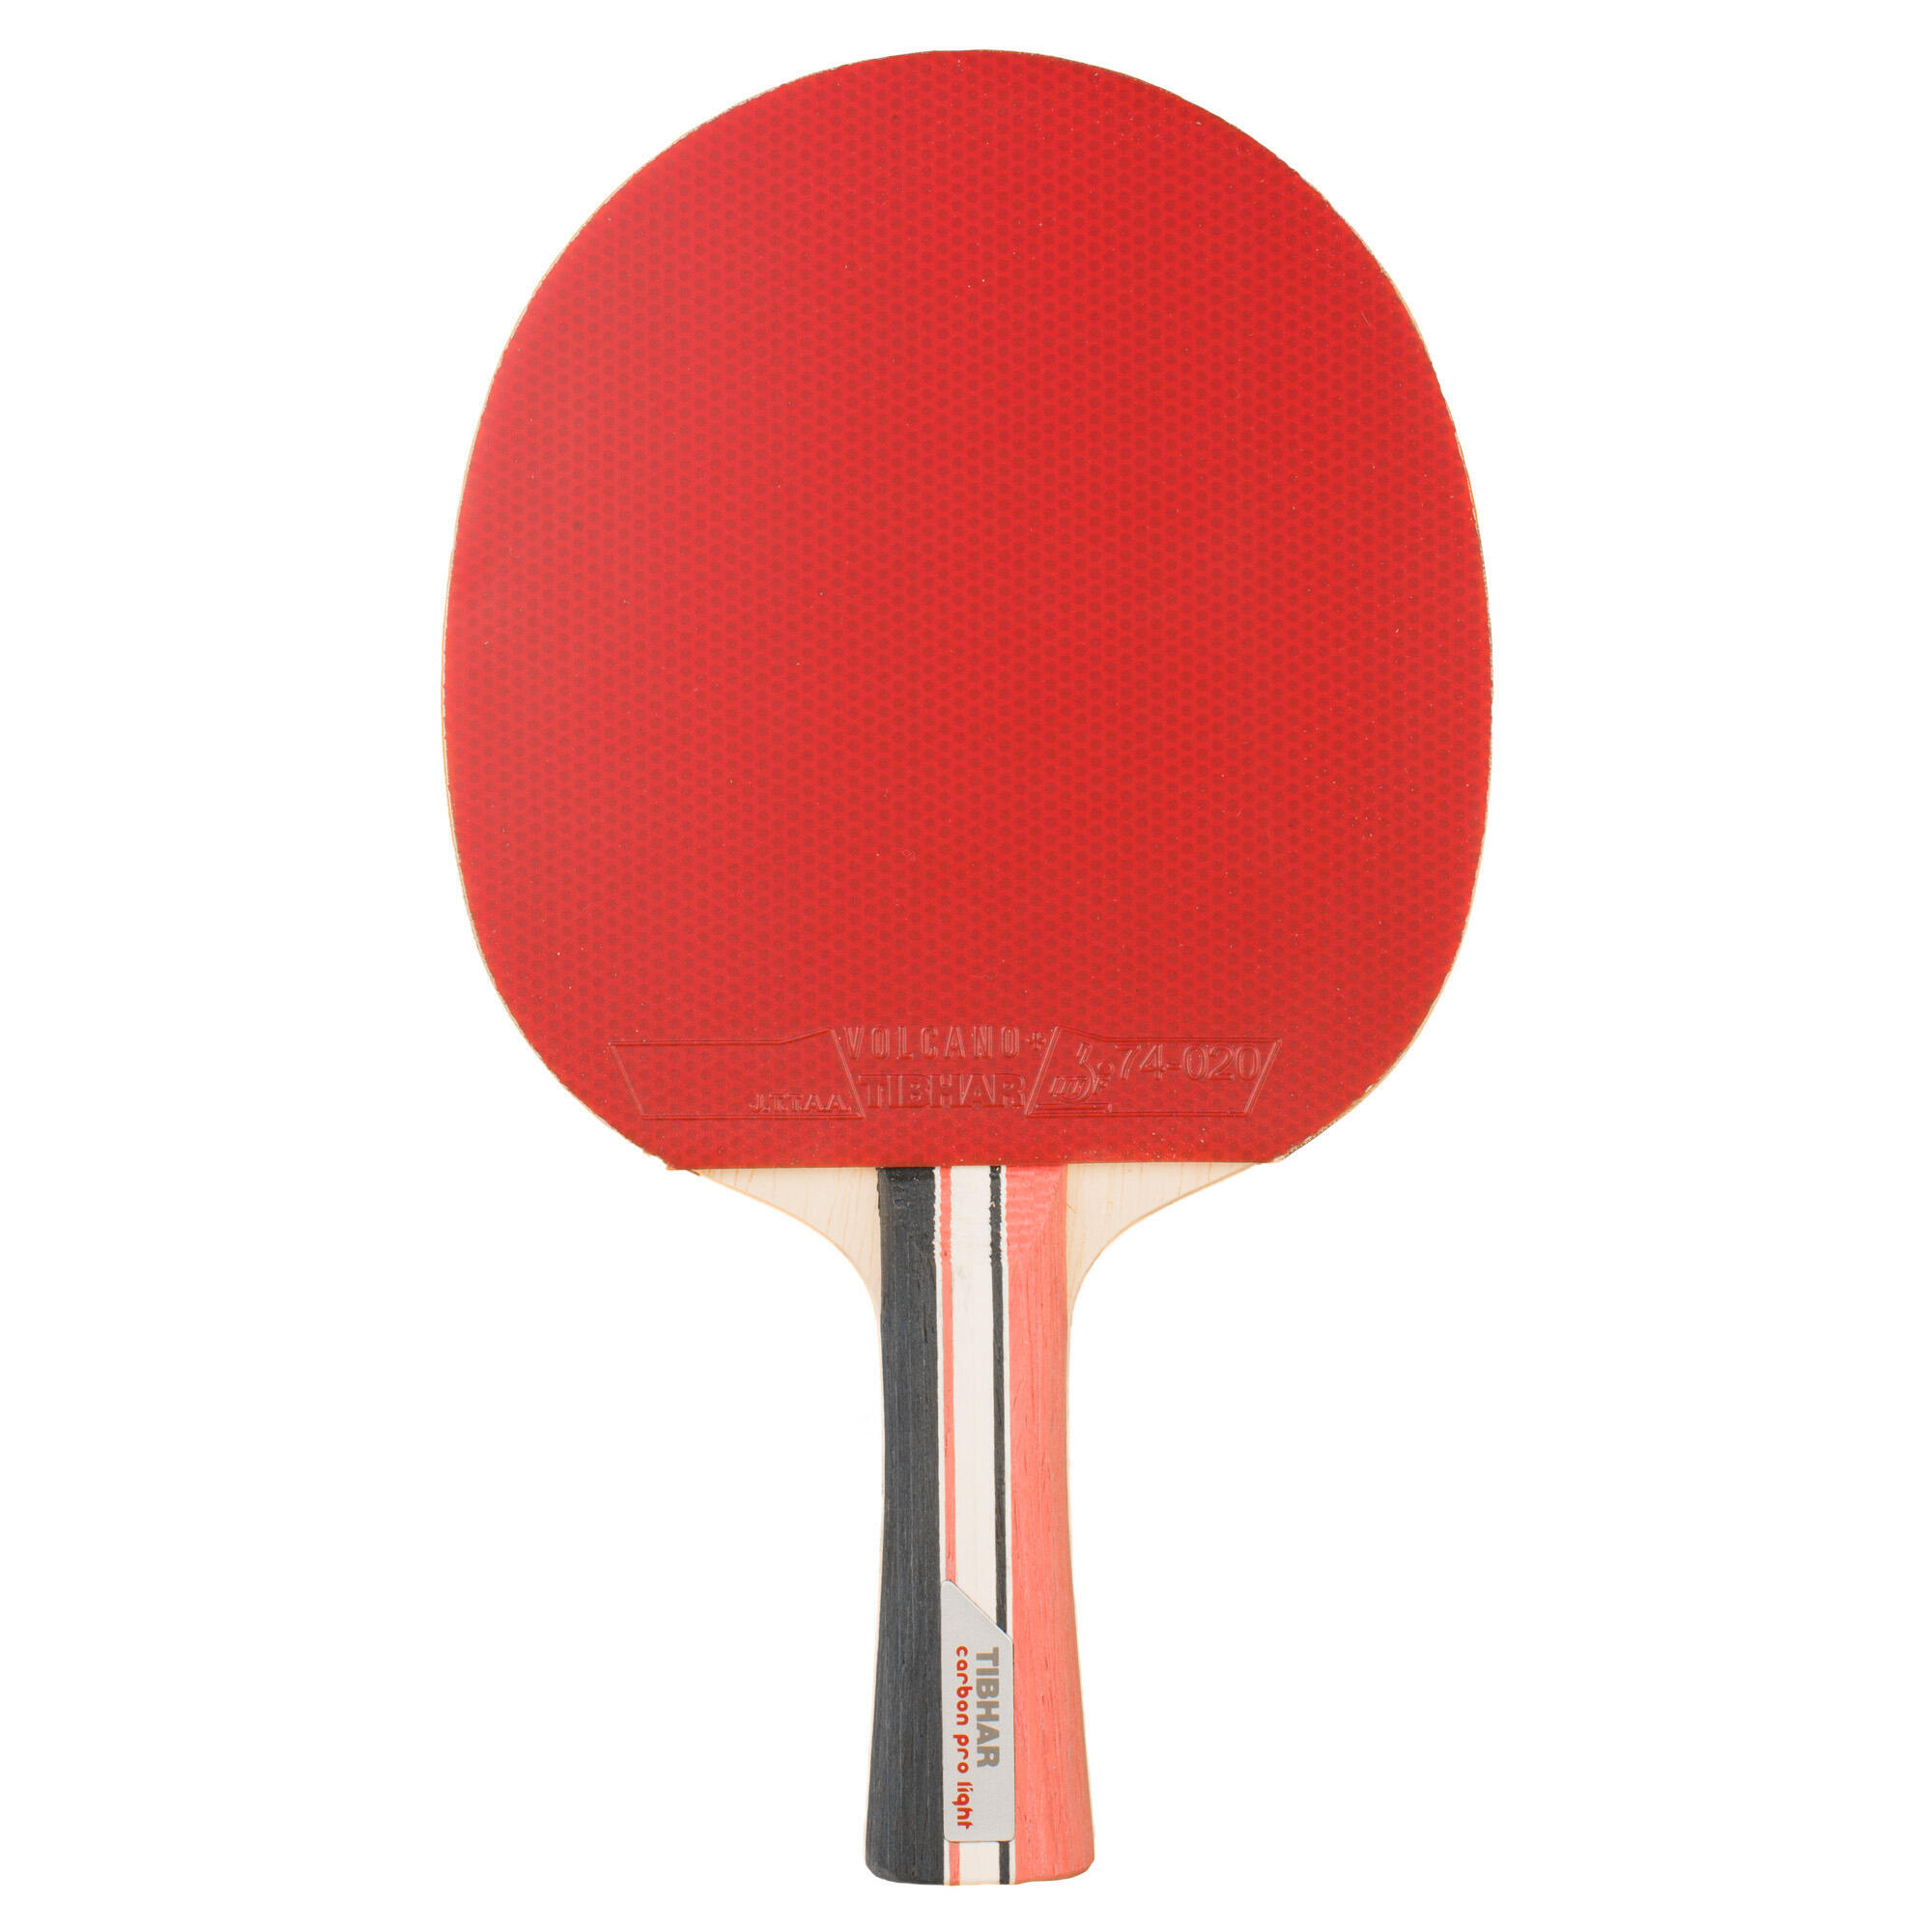 Ракетка для настольного тенниса Carbon Pro Light 5* club sport TIBHAR ракетка для настольного тенниса joola carbon pro